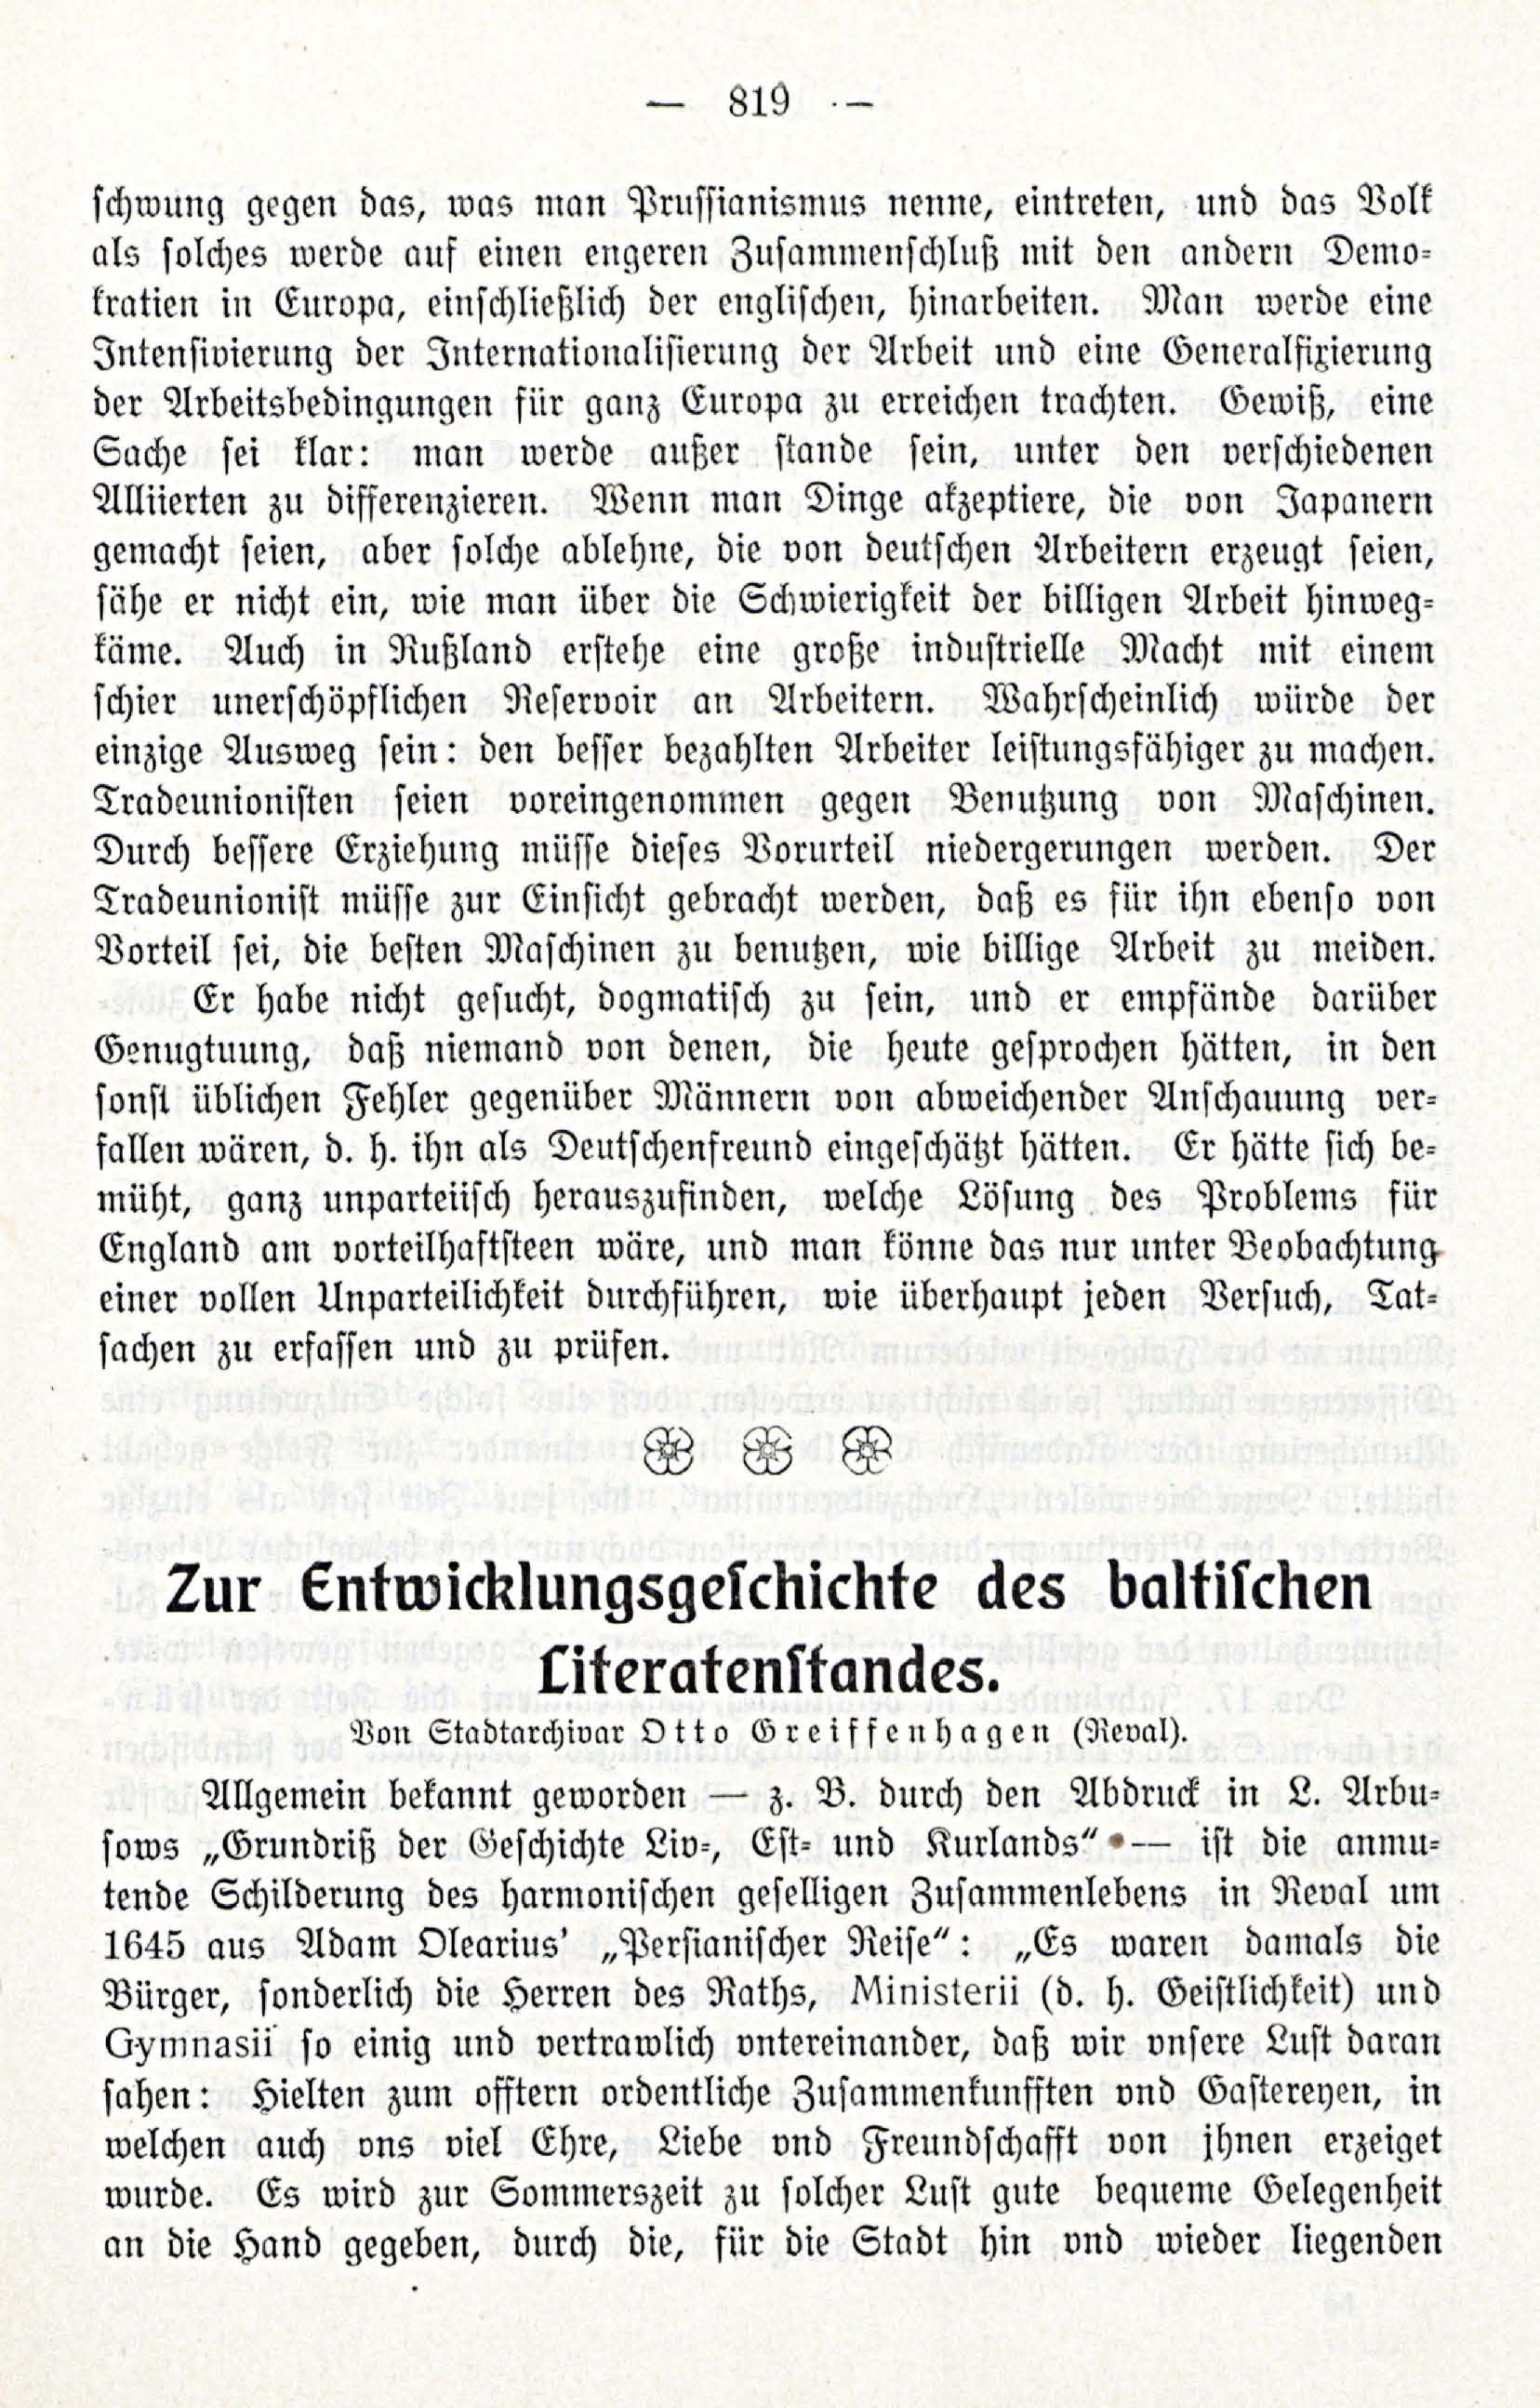 Zur Entwicklungesgescshichte des baltischen Literatenstandes (1914) | 1. (819) Haupttext